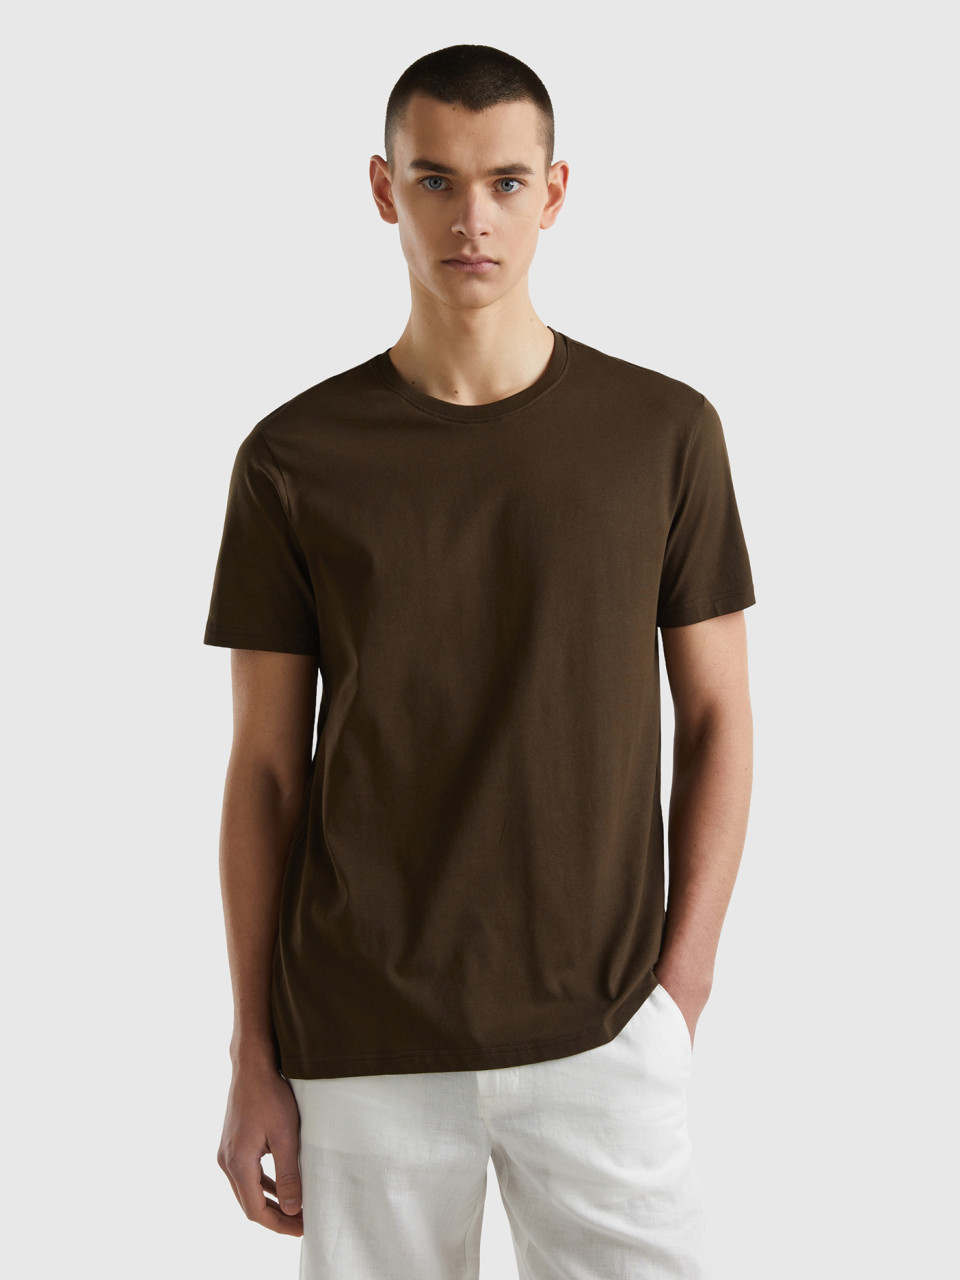 Benetton, Camiseta Marrón Caoba, Marrón Oscuro, Hombre